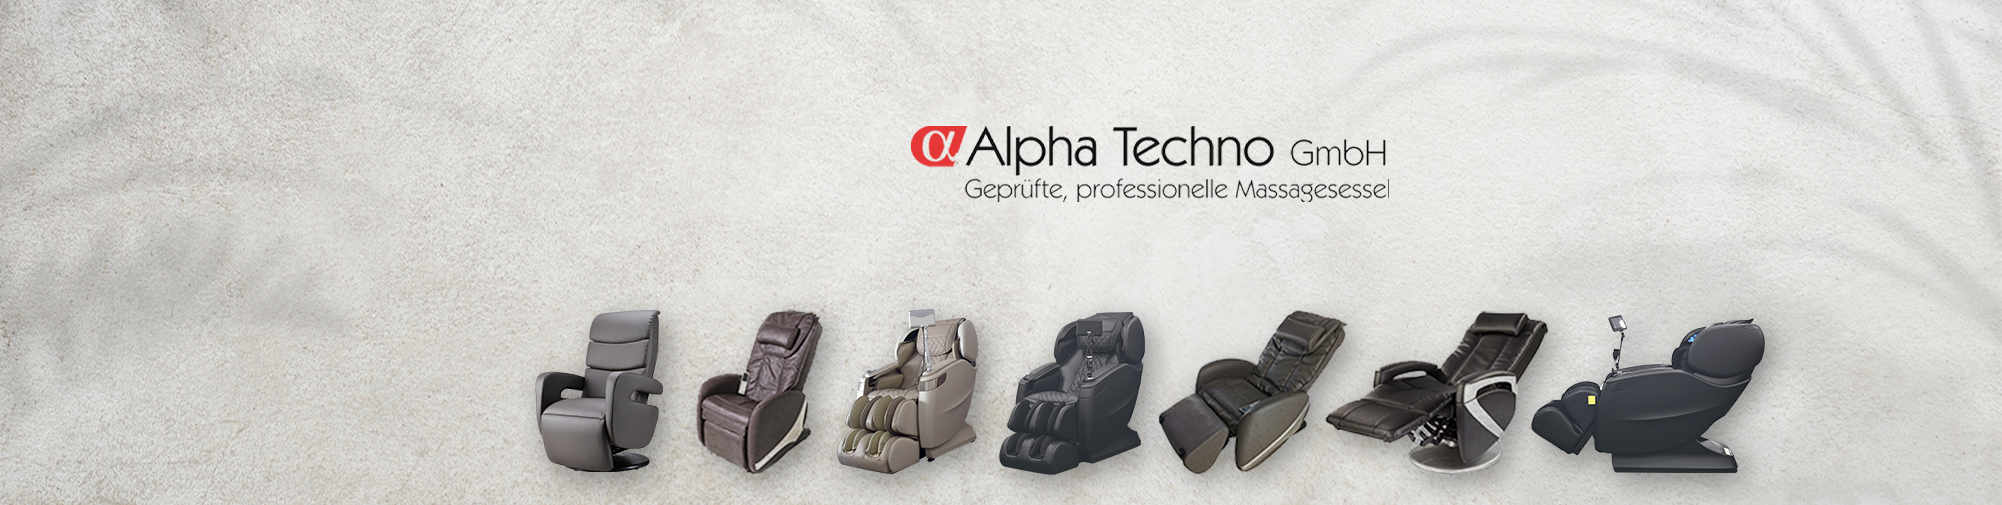 Alpha Techno - Numărul 1 în Europa | Scaun de masaj în lume